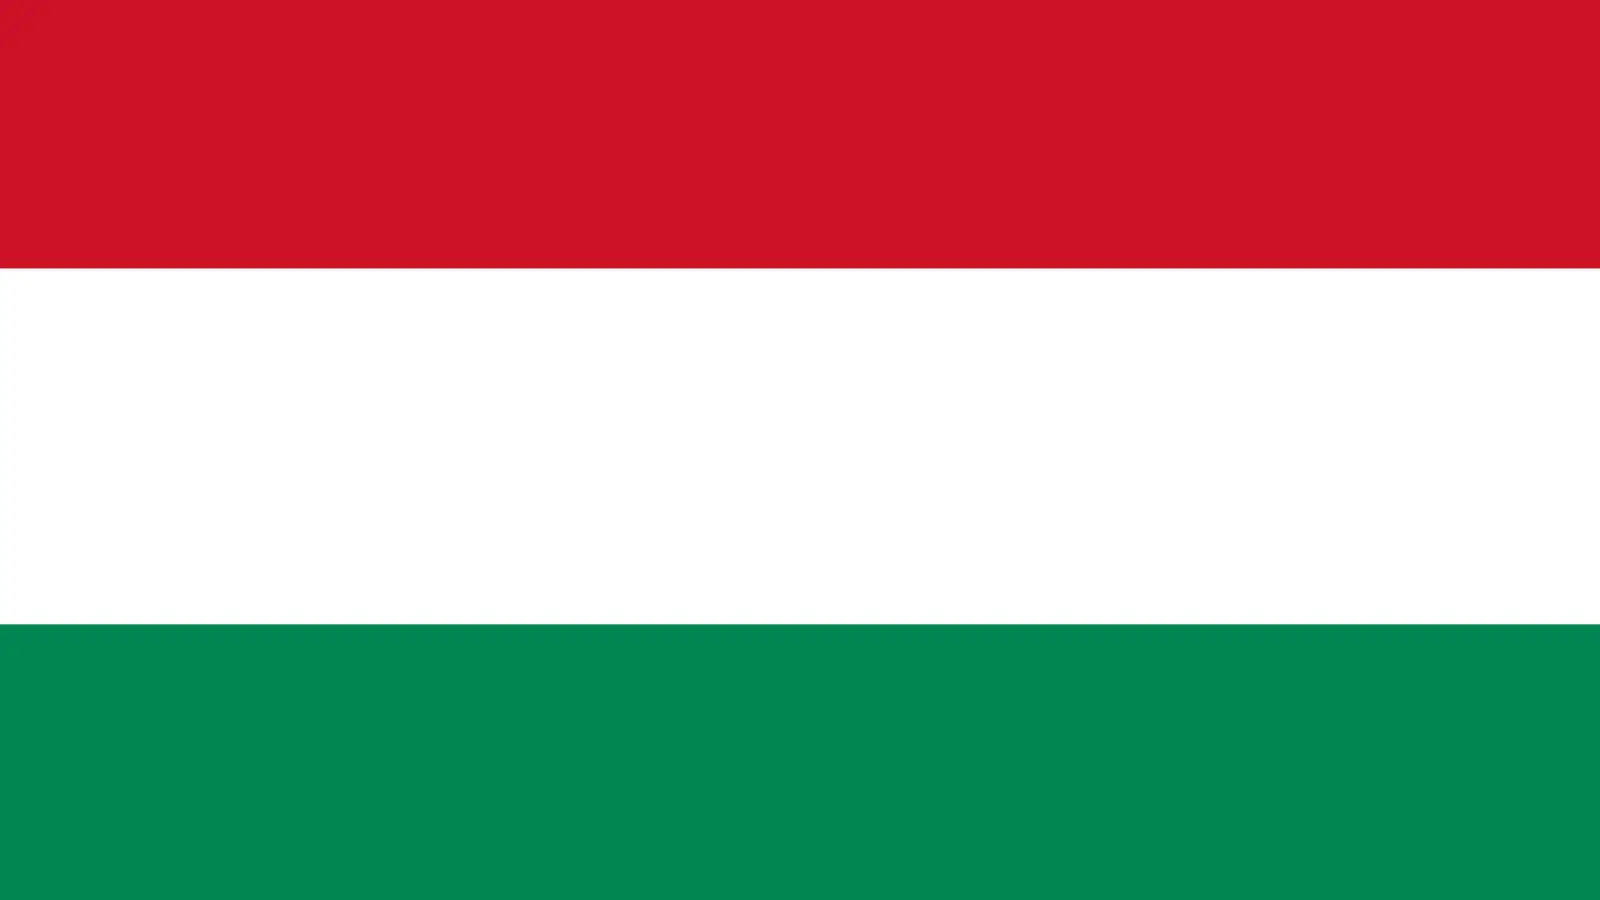 La Hongrie s'oppose à une décision importante demandée au sein de l'UE